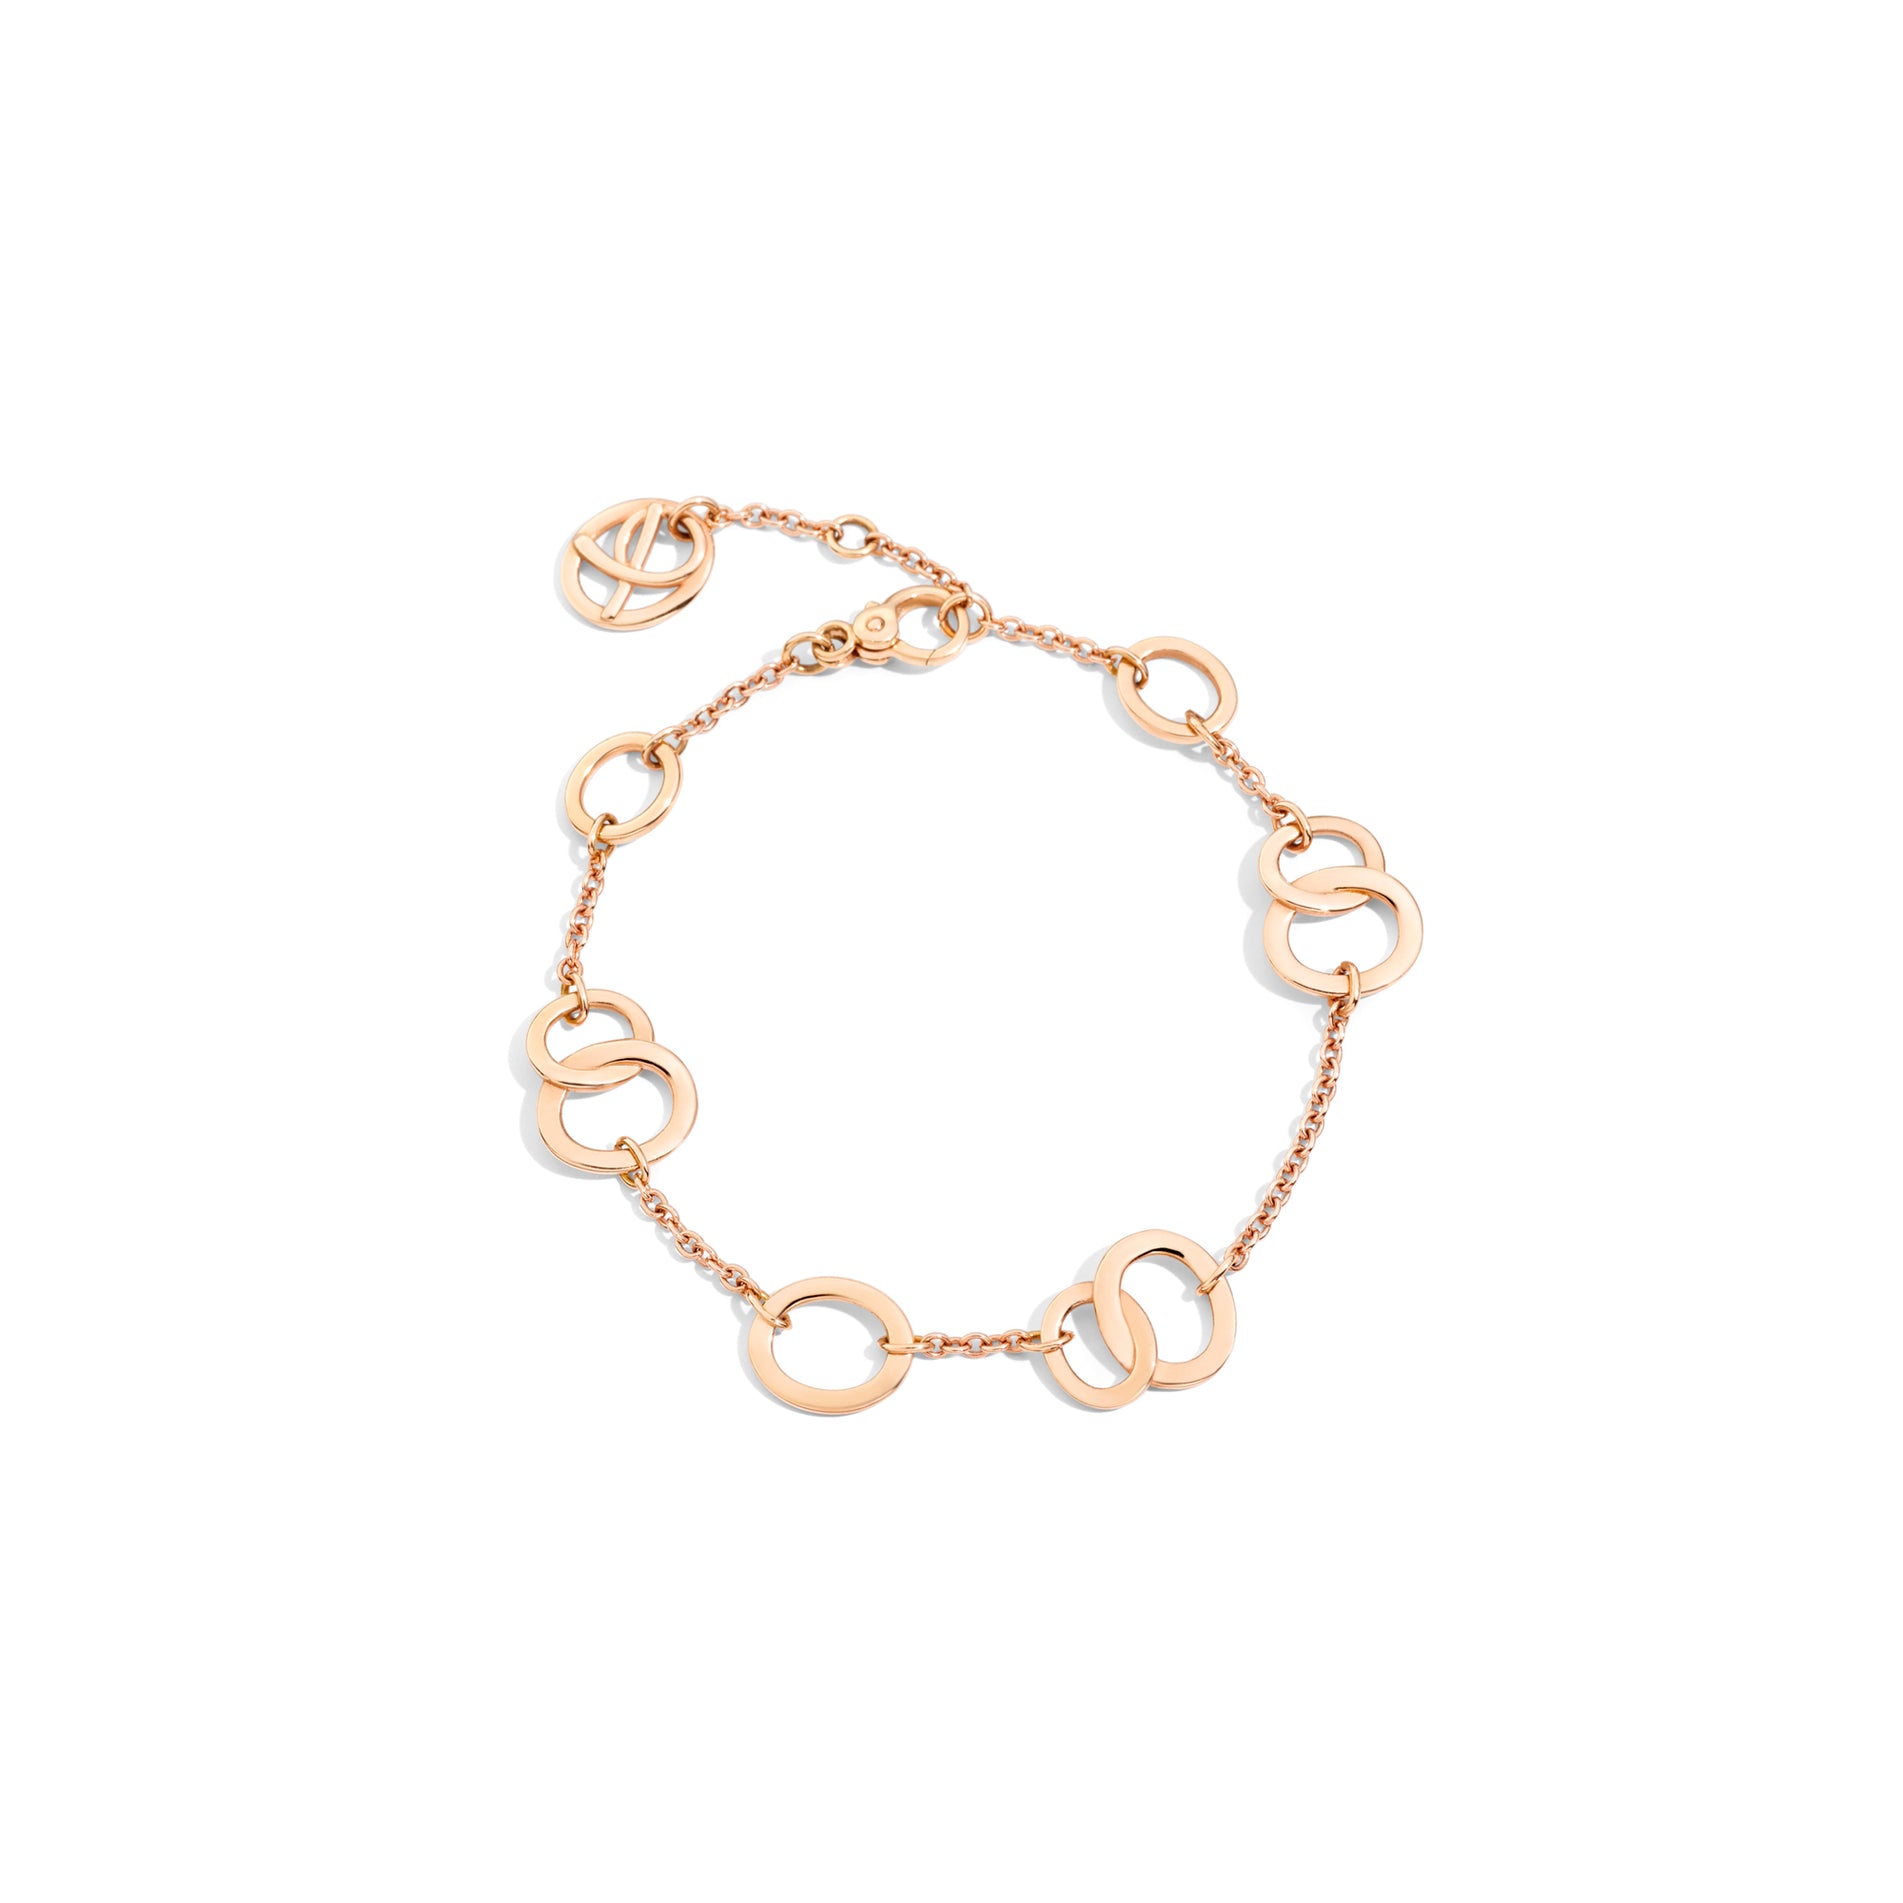 Brera Bracelet in 18k Rose Gold - Orsini Jewellers NZ